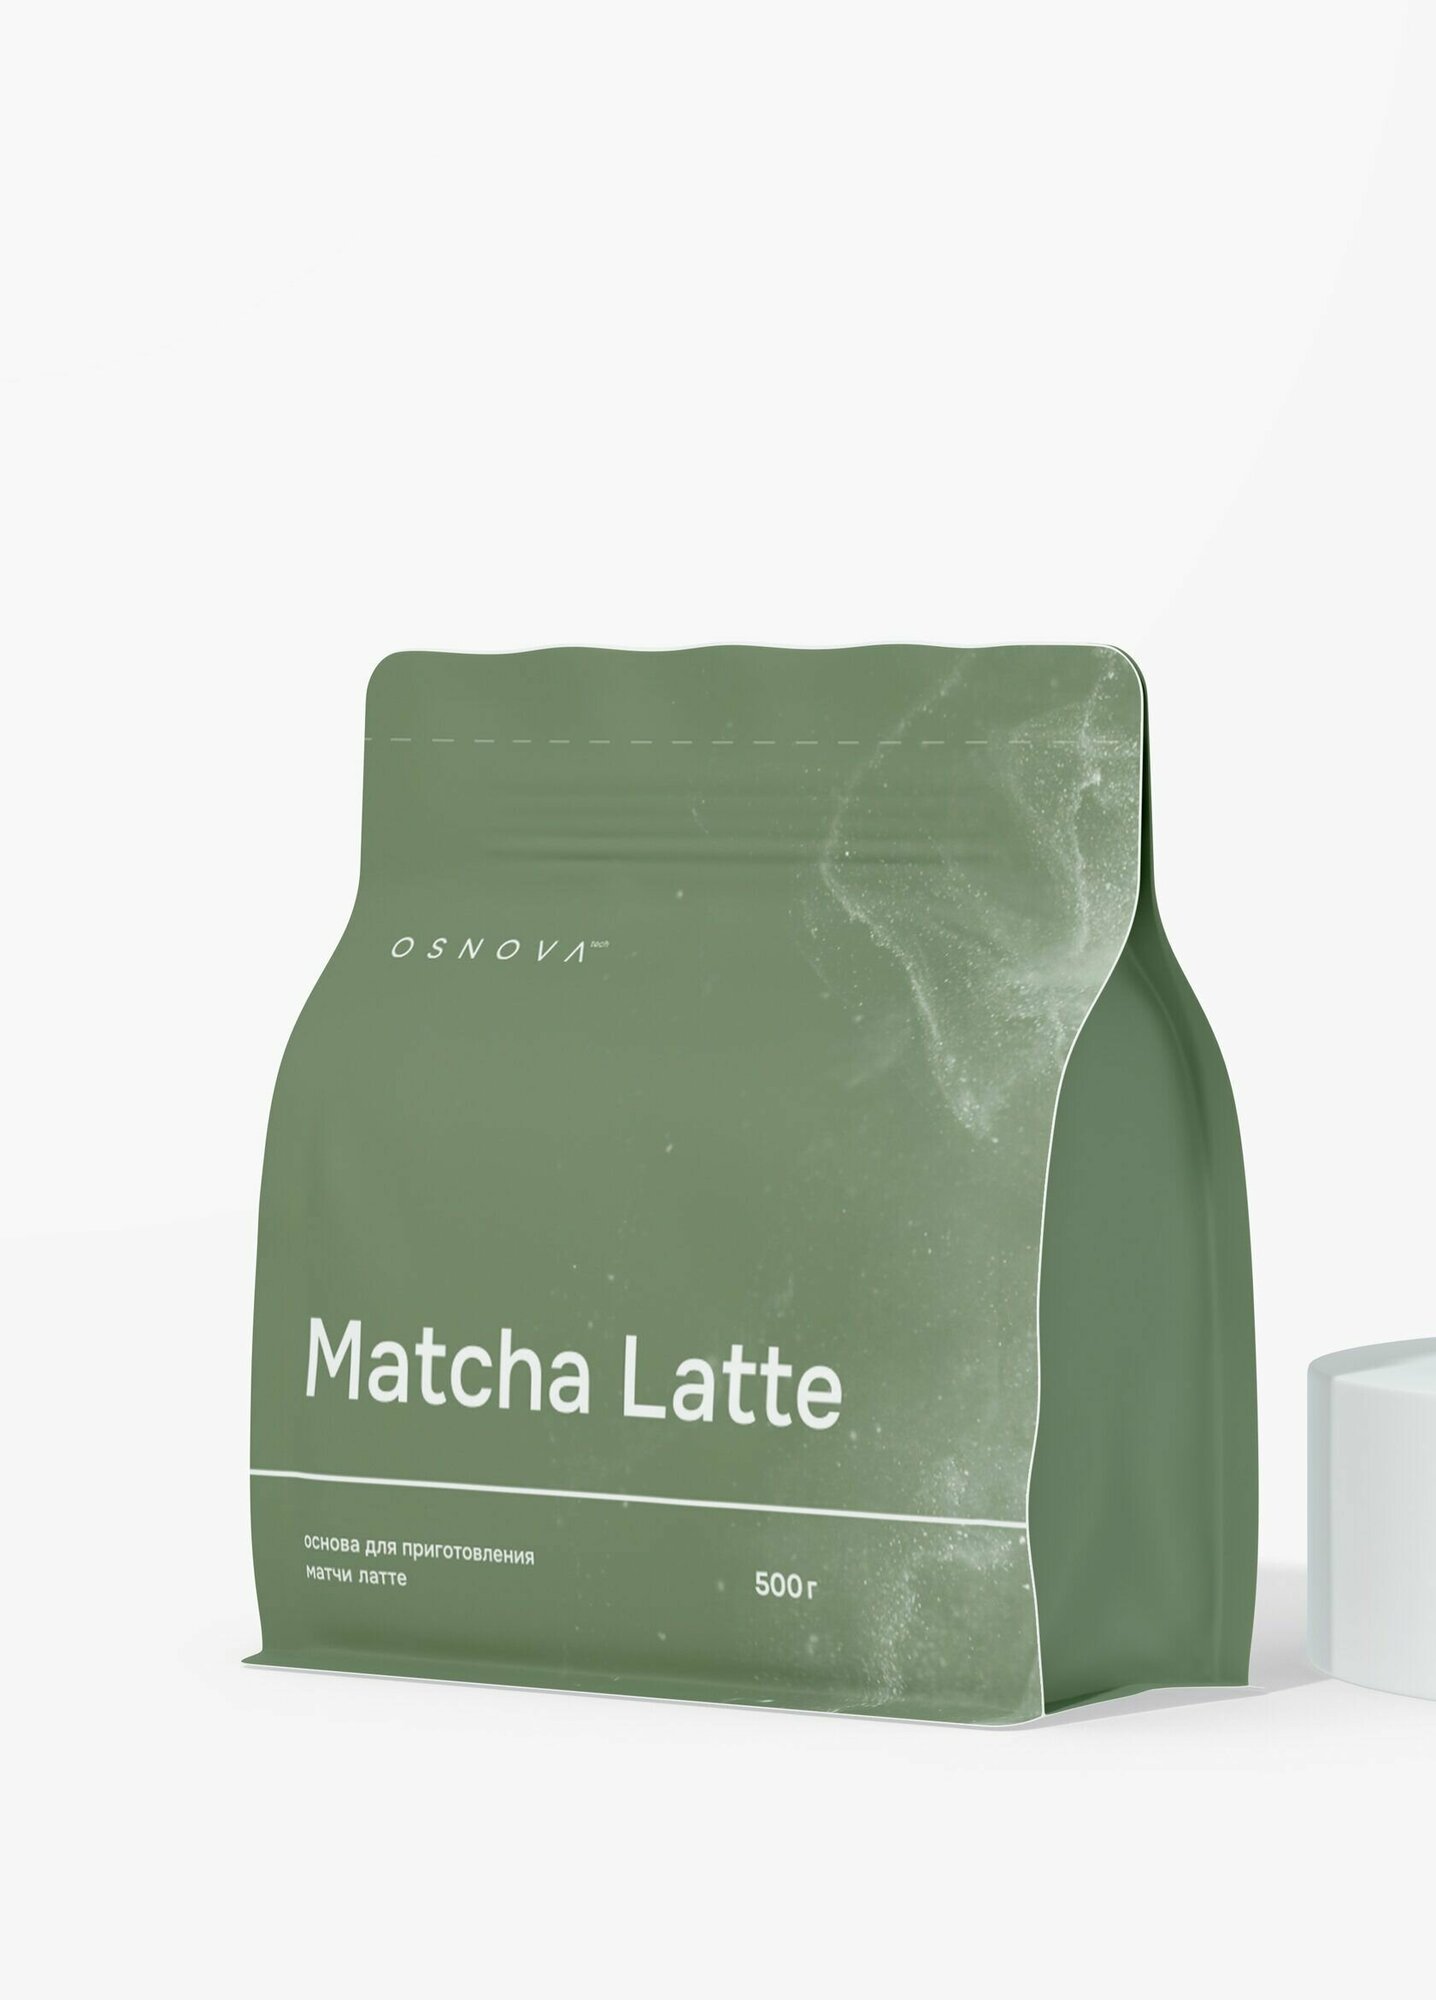 Matcha latte Классическая, Матча Латте, Японский чай